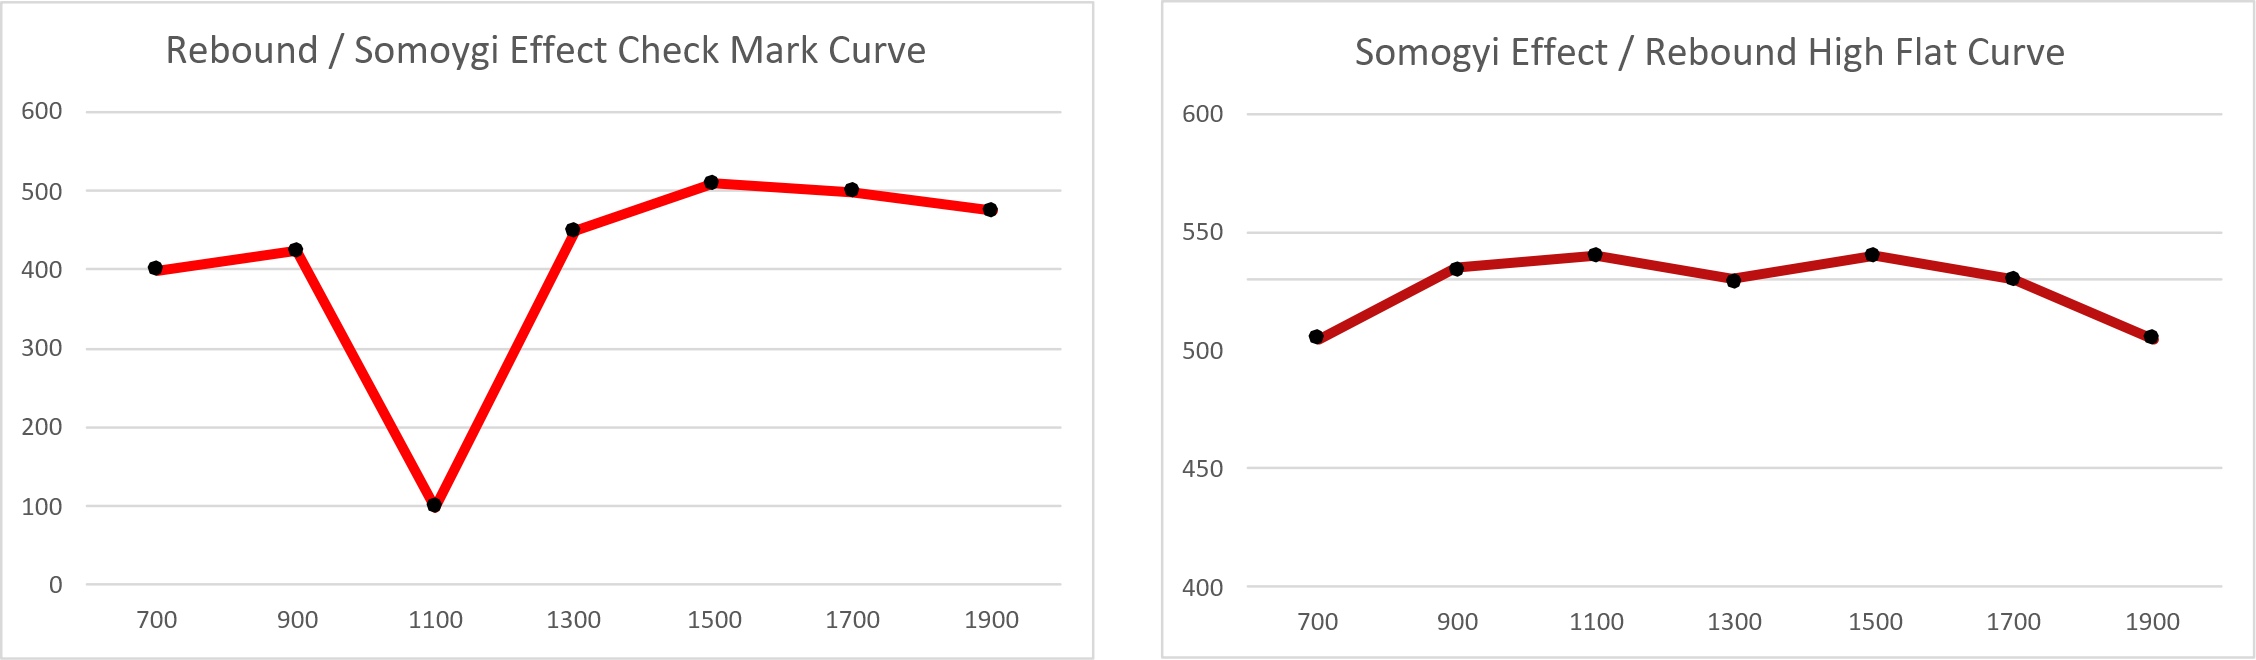 Somogyi Effect / Rebound Curve